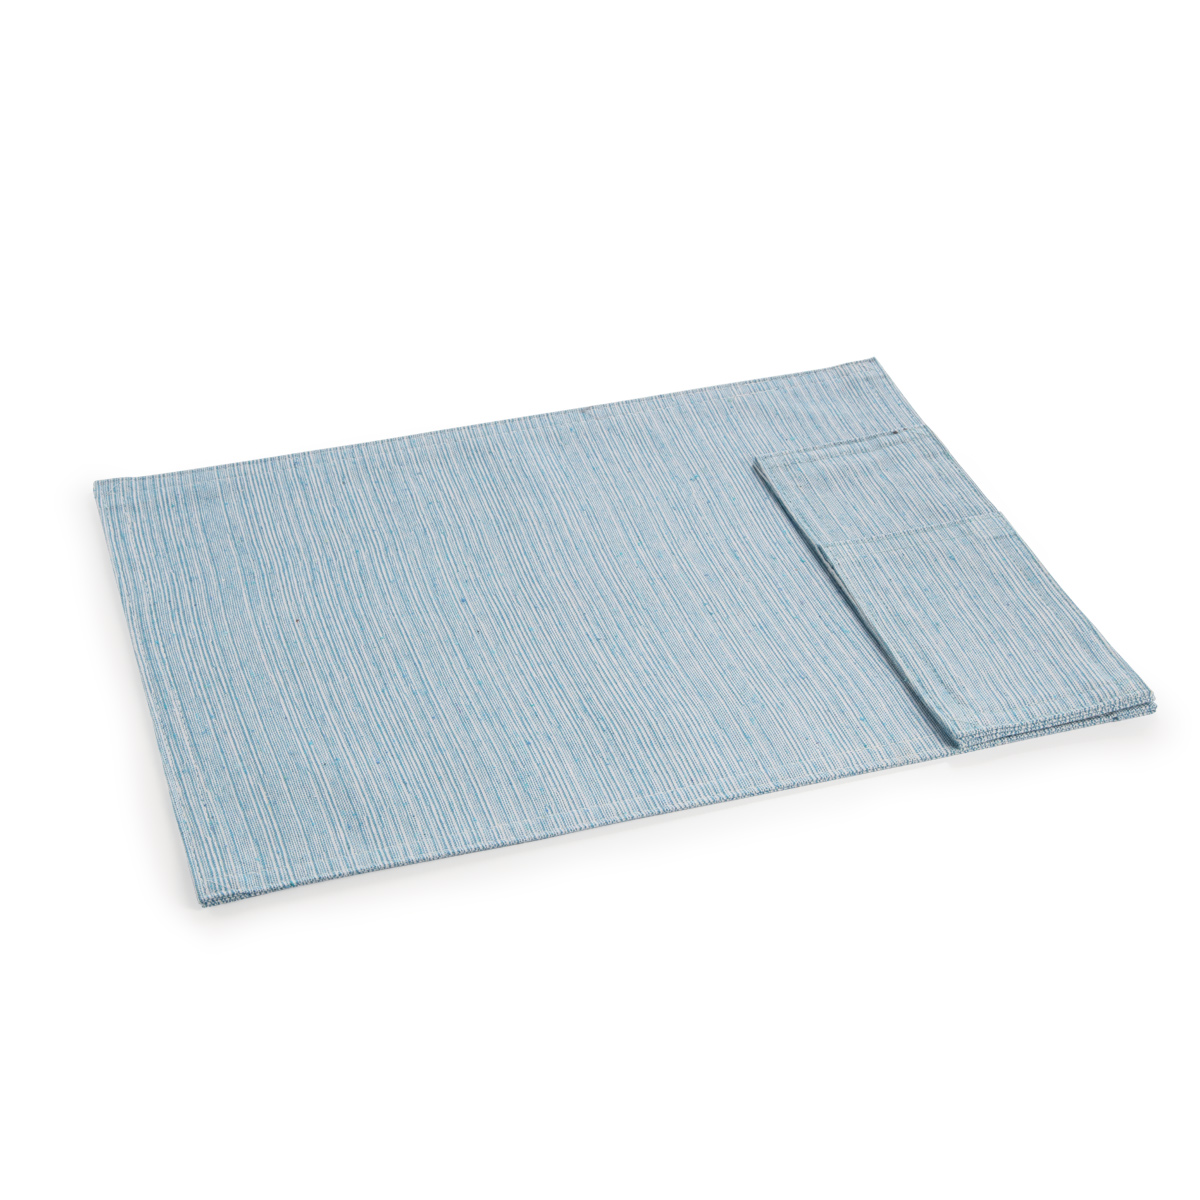 Base individual de tecido com bolso para talheres FLAIR LOUNGE, 45 x 32 cm